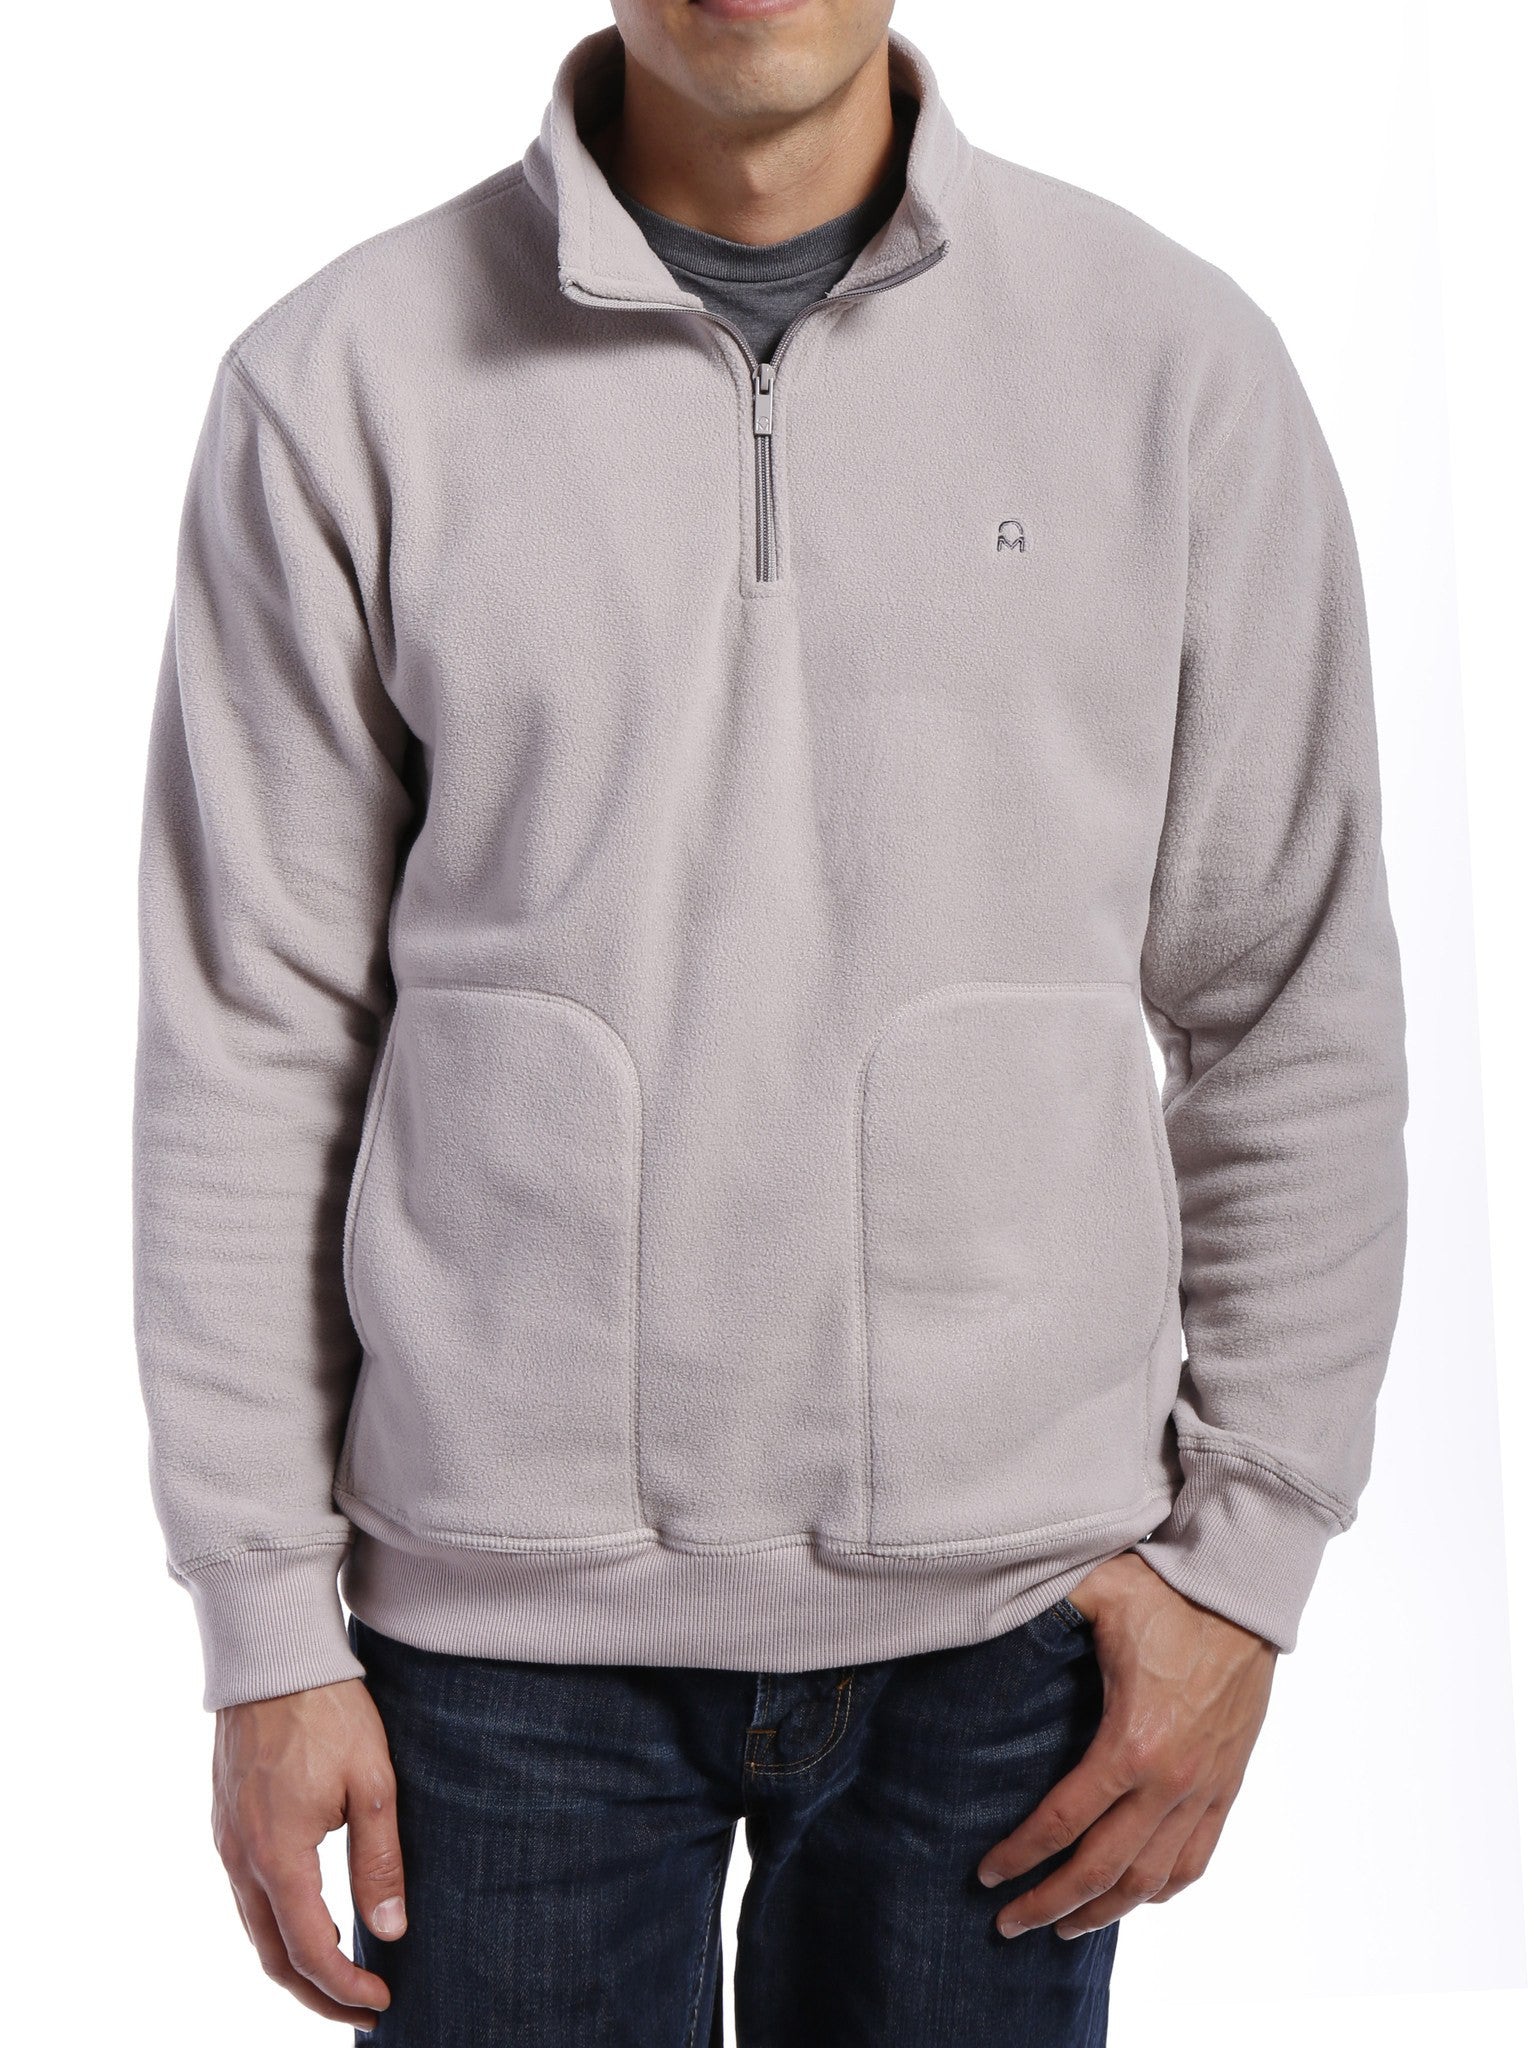 Men's Soft Fleece Half-Zip Pullover